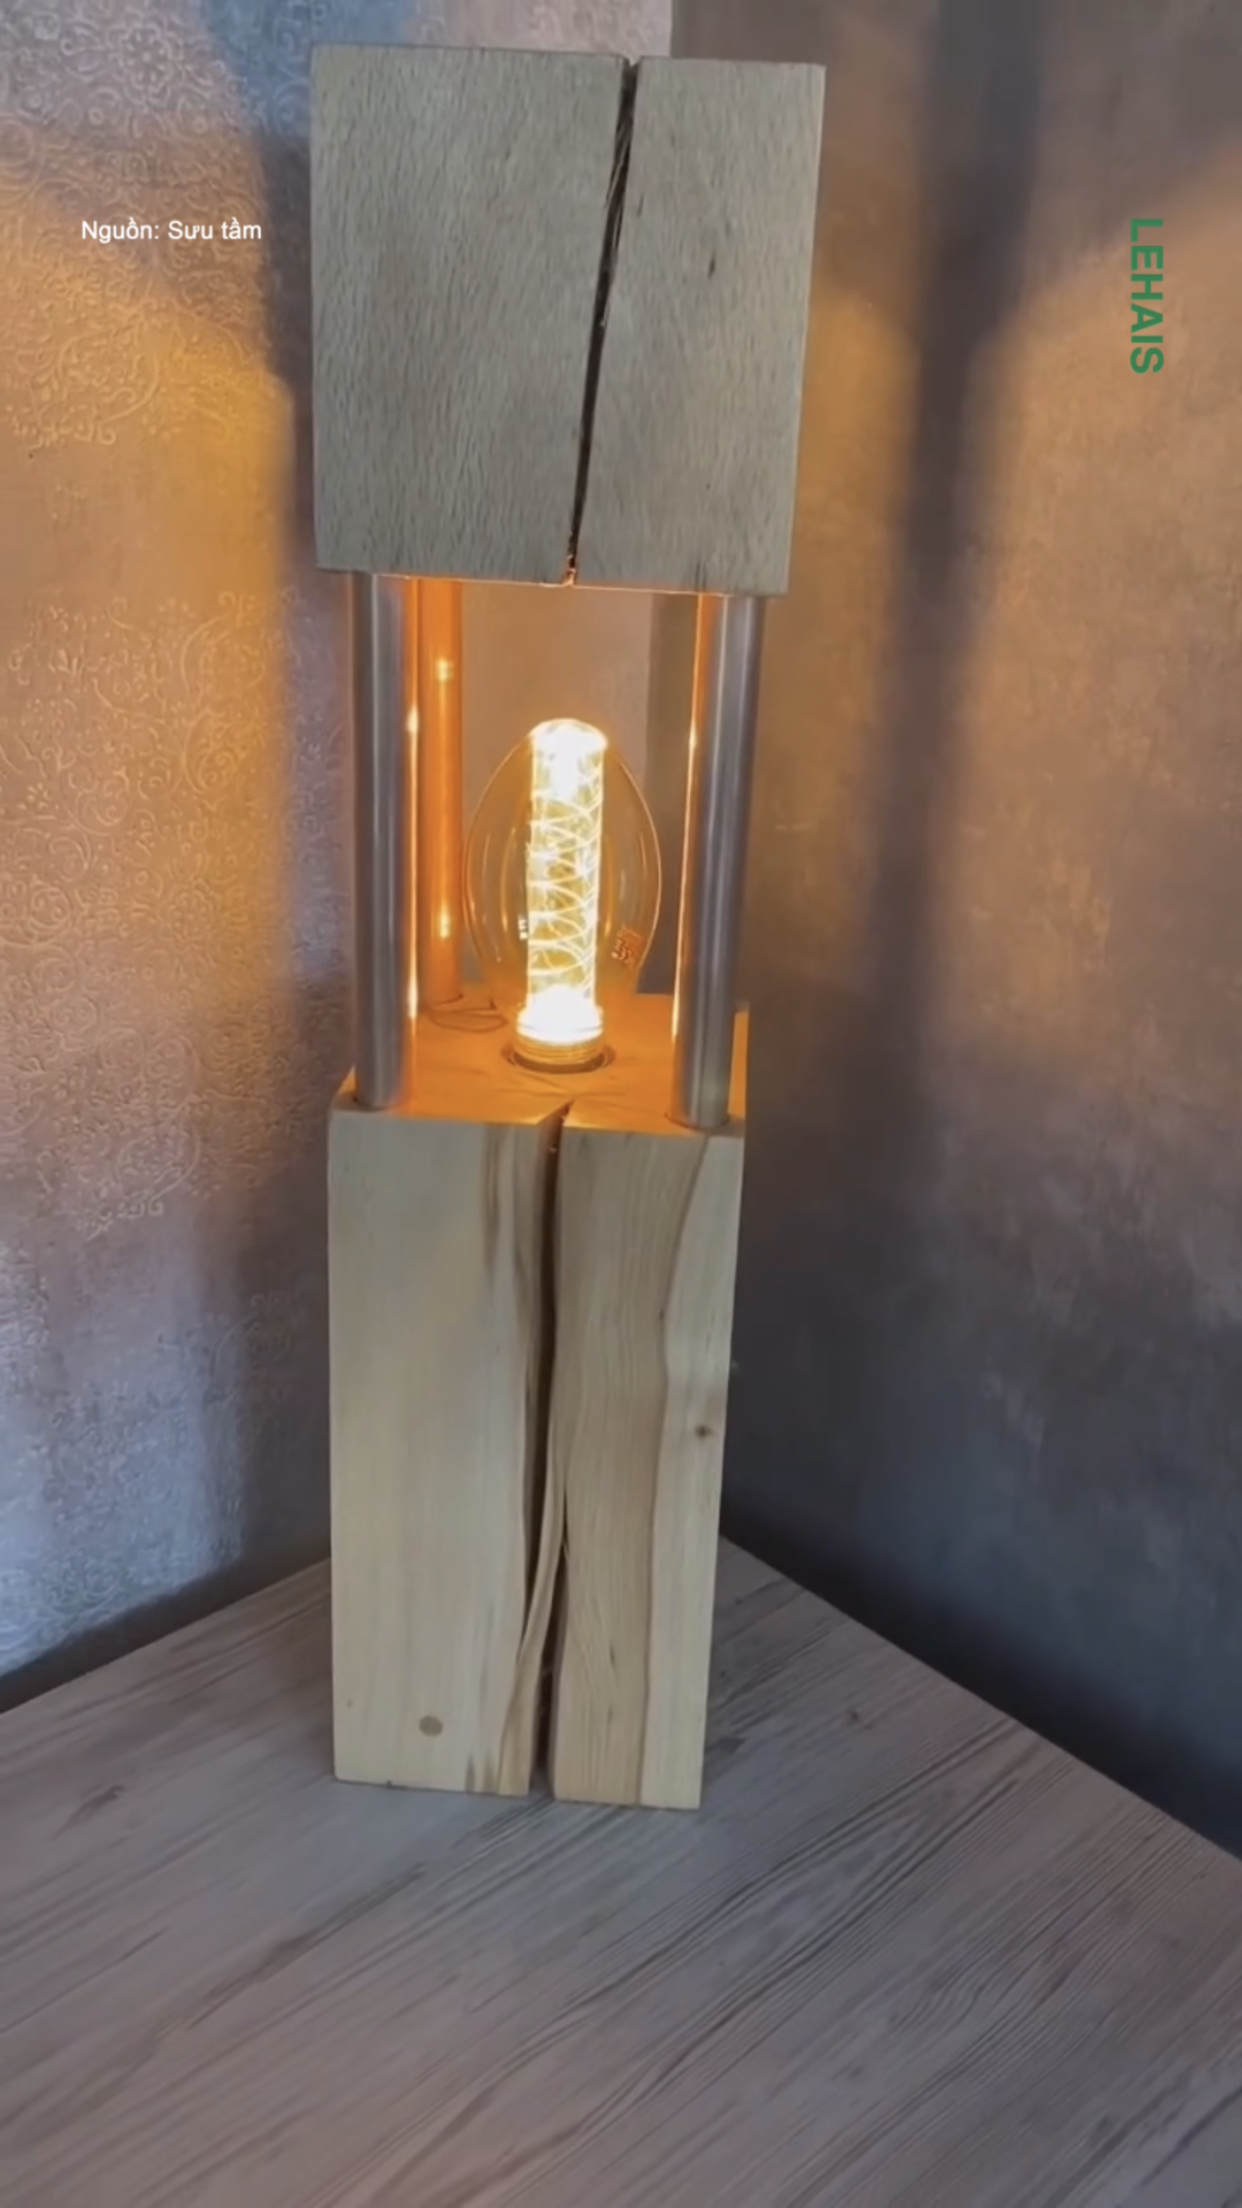 Đèn ngủ được làm thủ công từ thân gỗ